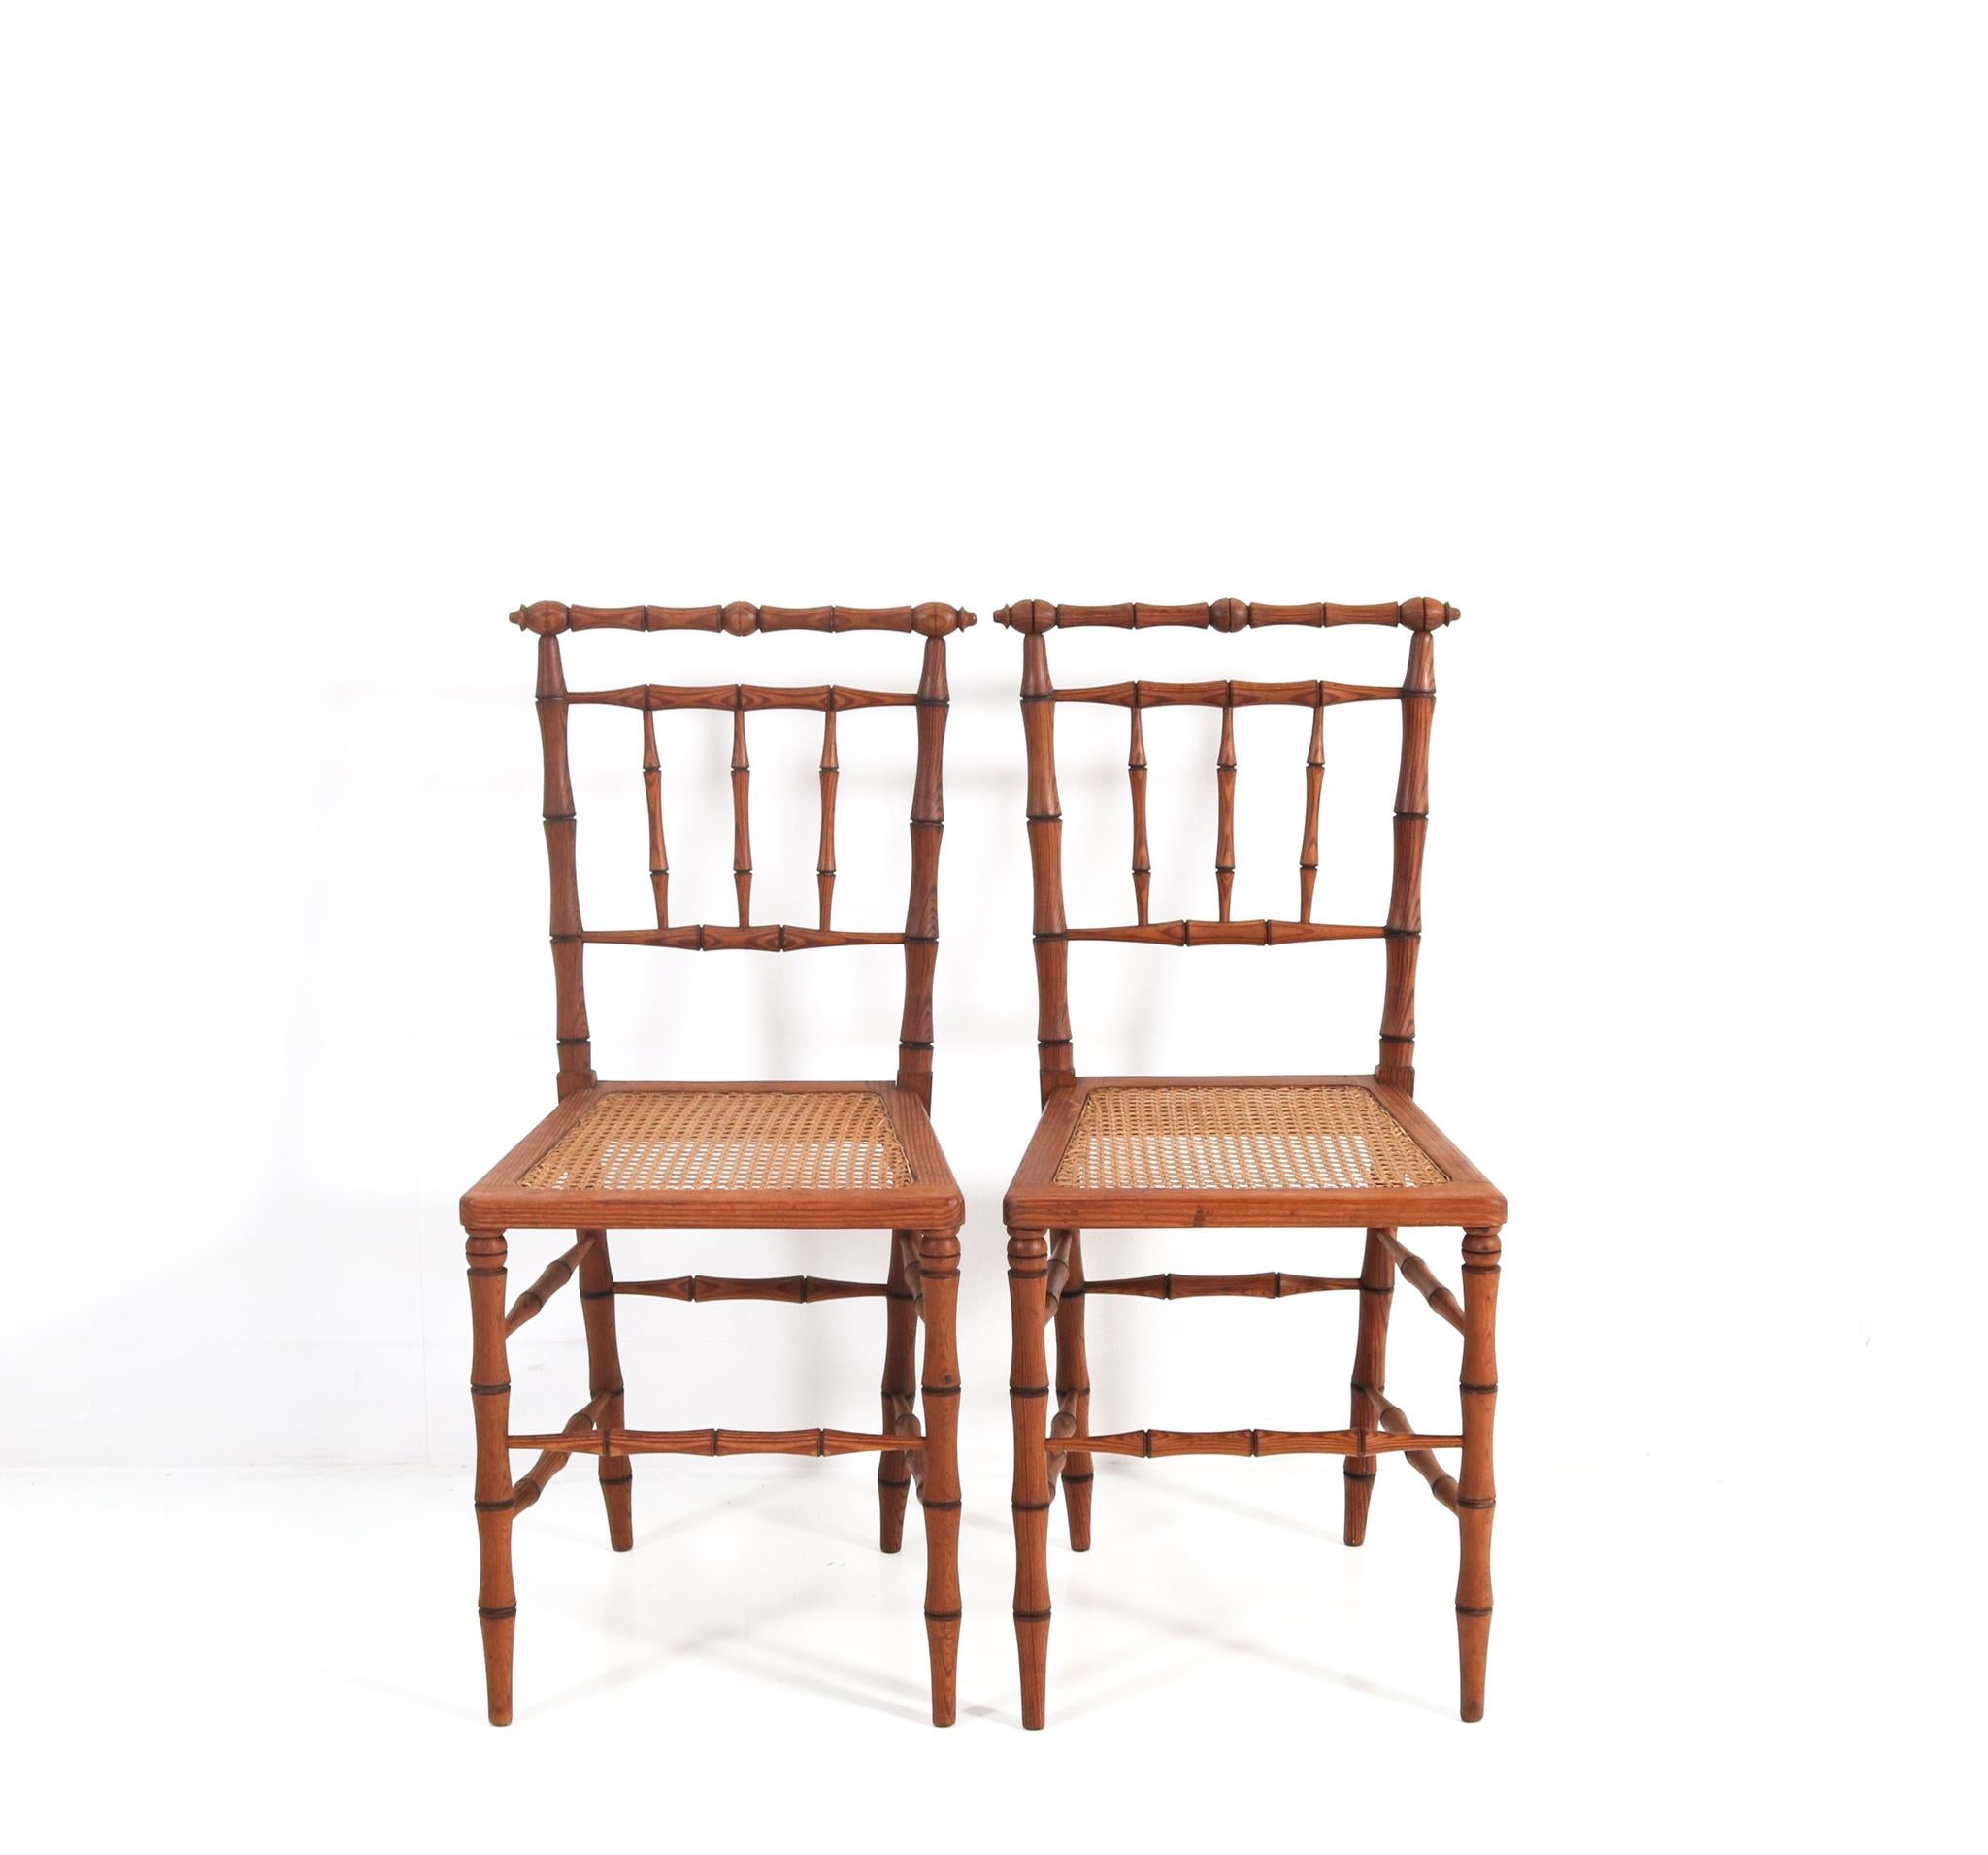 Magnifique et rare paire de chaises d'appoint Art Nouveau.
Un design français saisissant des années 1900.
Cadres en pitch-pine massif dans le style Faux Bamboo avec un design original.
Sièges en osier.
Rare car cette magnifique paire de chaises